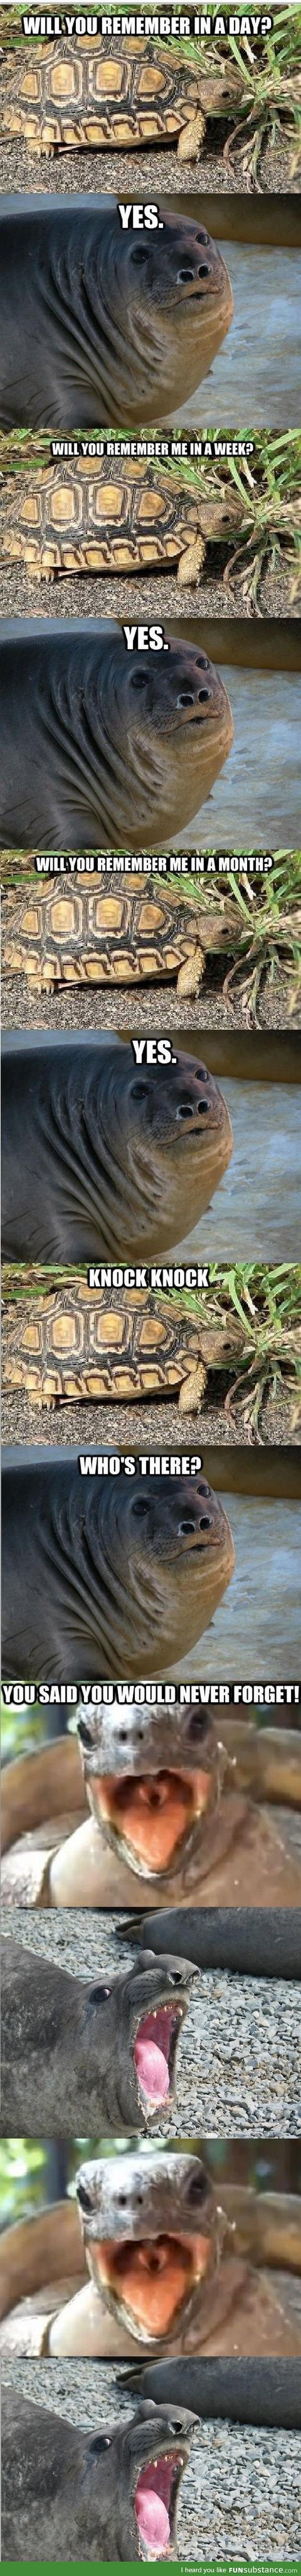 It was just a joke Turtle!!